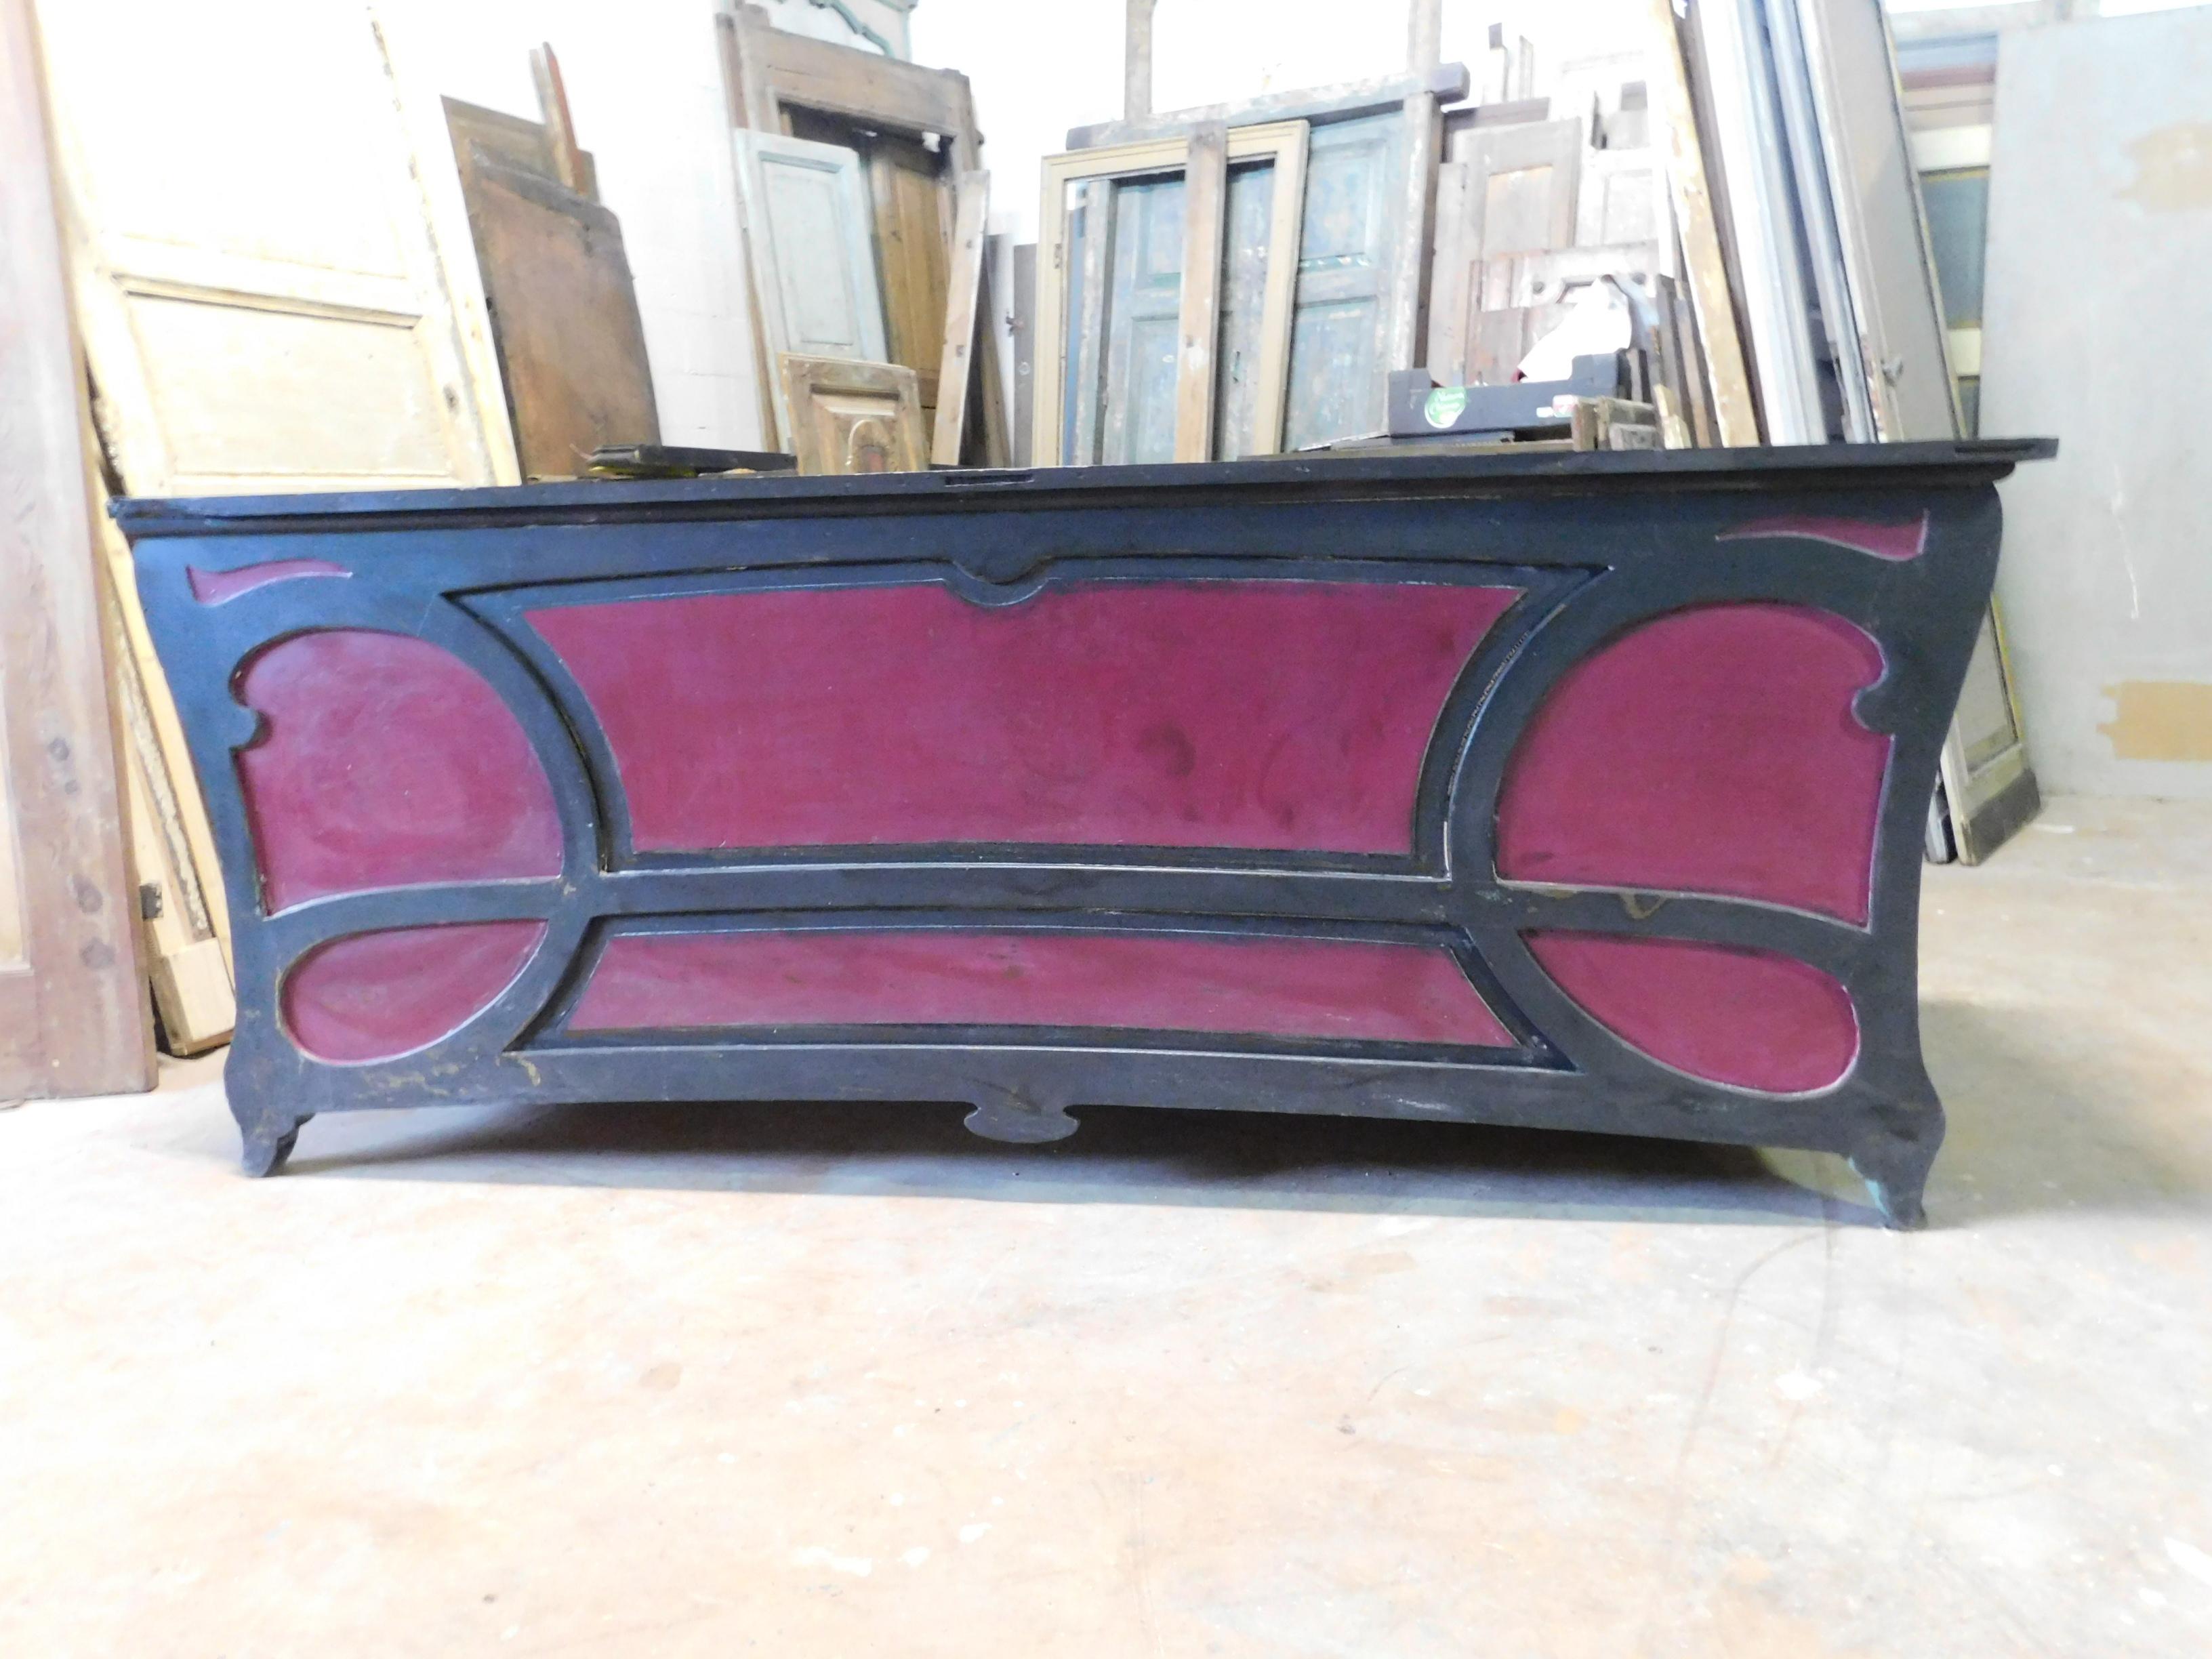 La table de comptoir Liberty laquée noir et rouge, avec des mouvements typiques de la période, a été utilisée dans un bar ou une boutique italienne, deuxième moitié du siècle dernier
1800.
Très particulier et avec des couleurs élégantes et